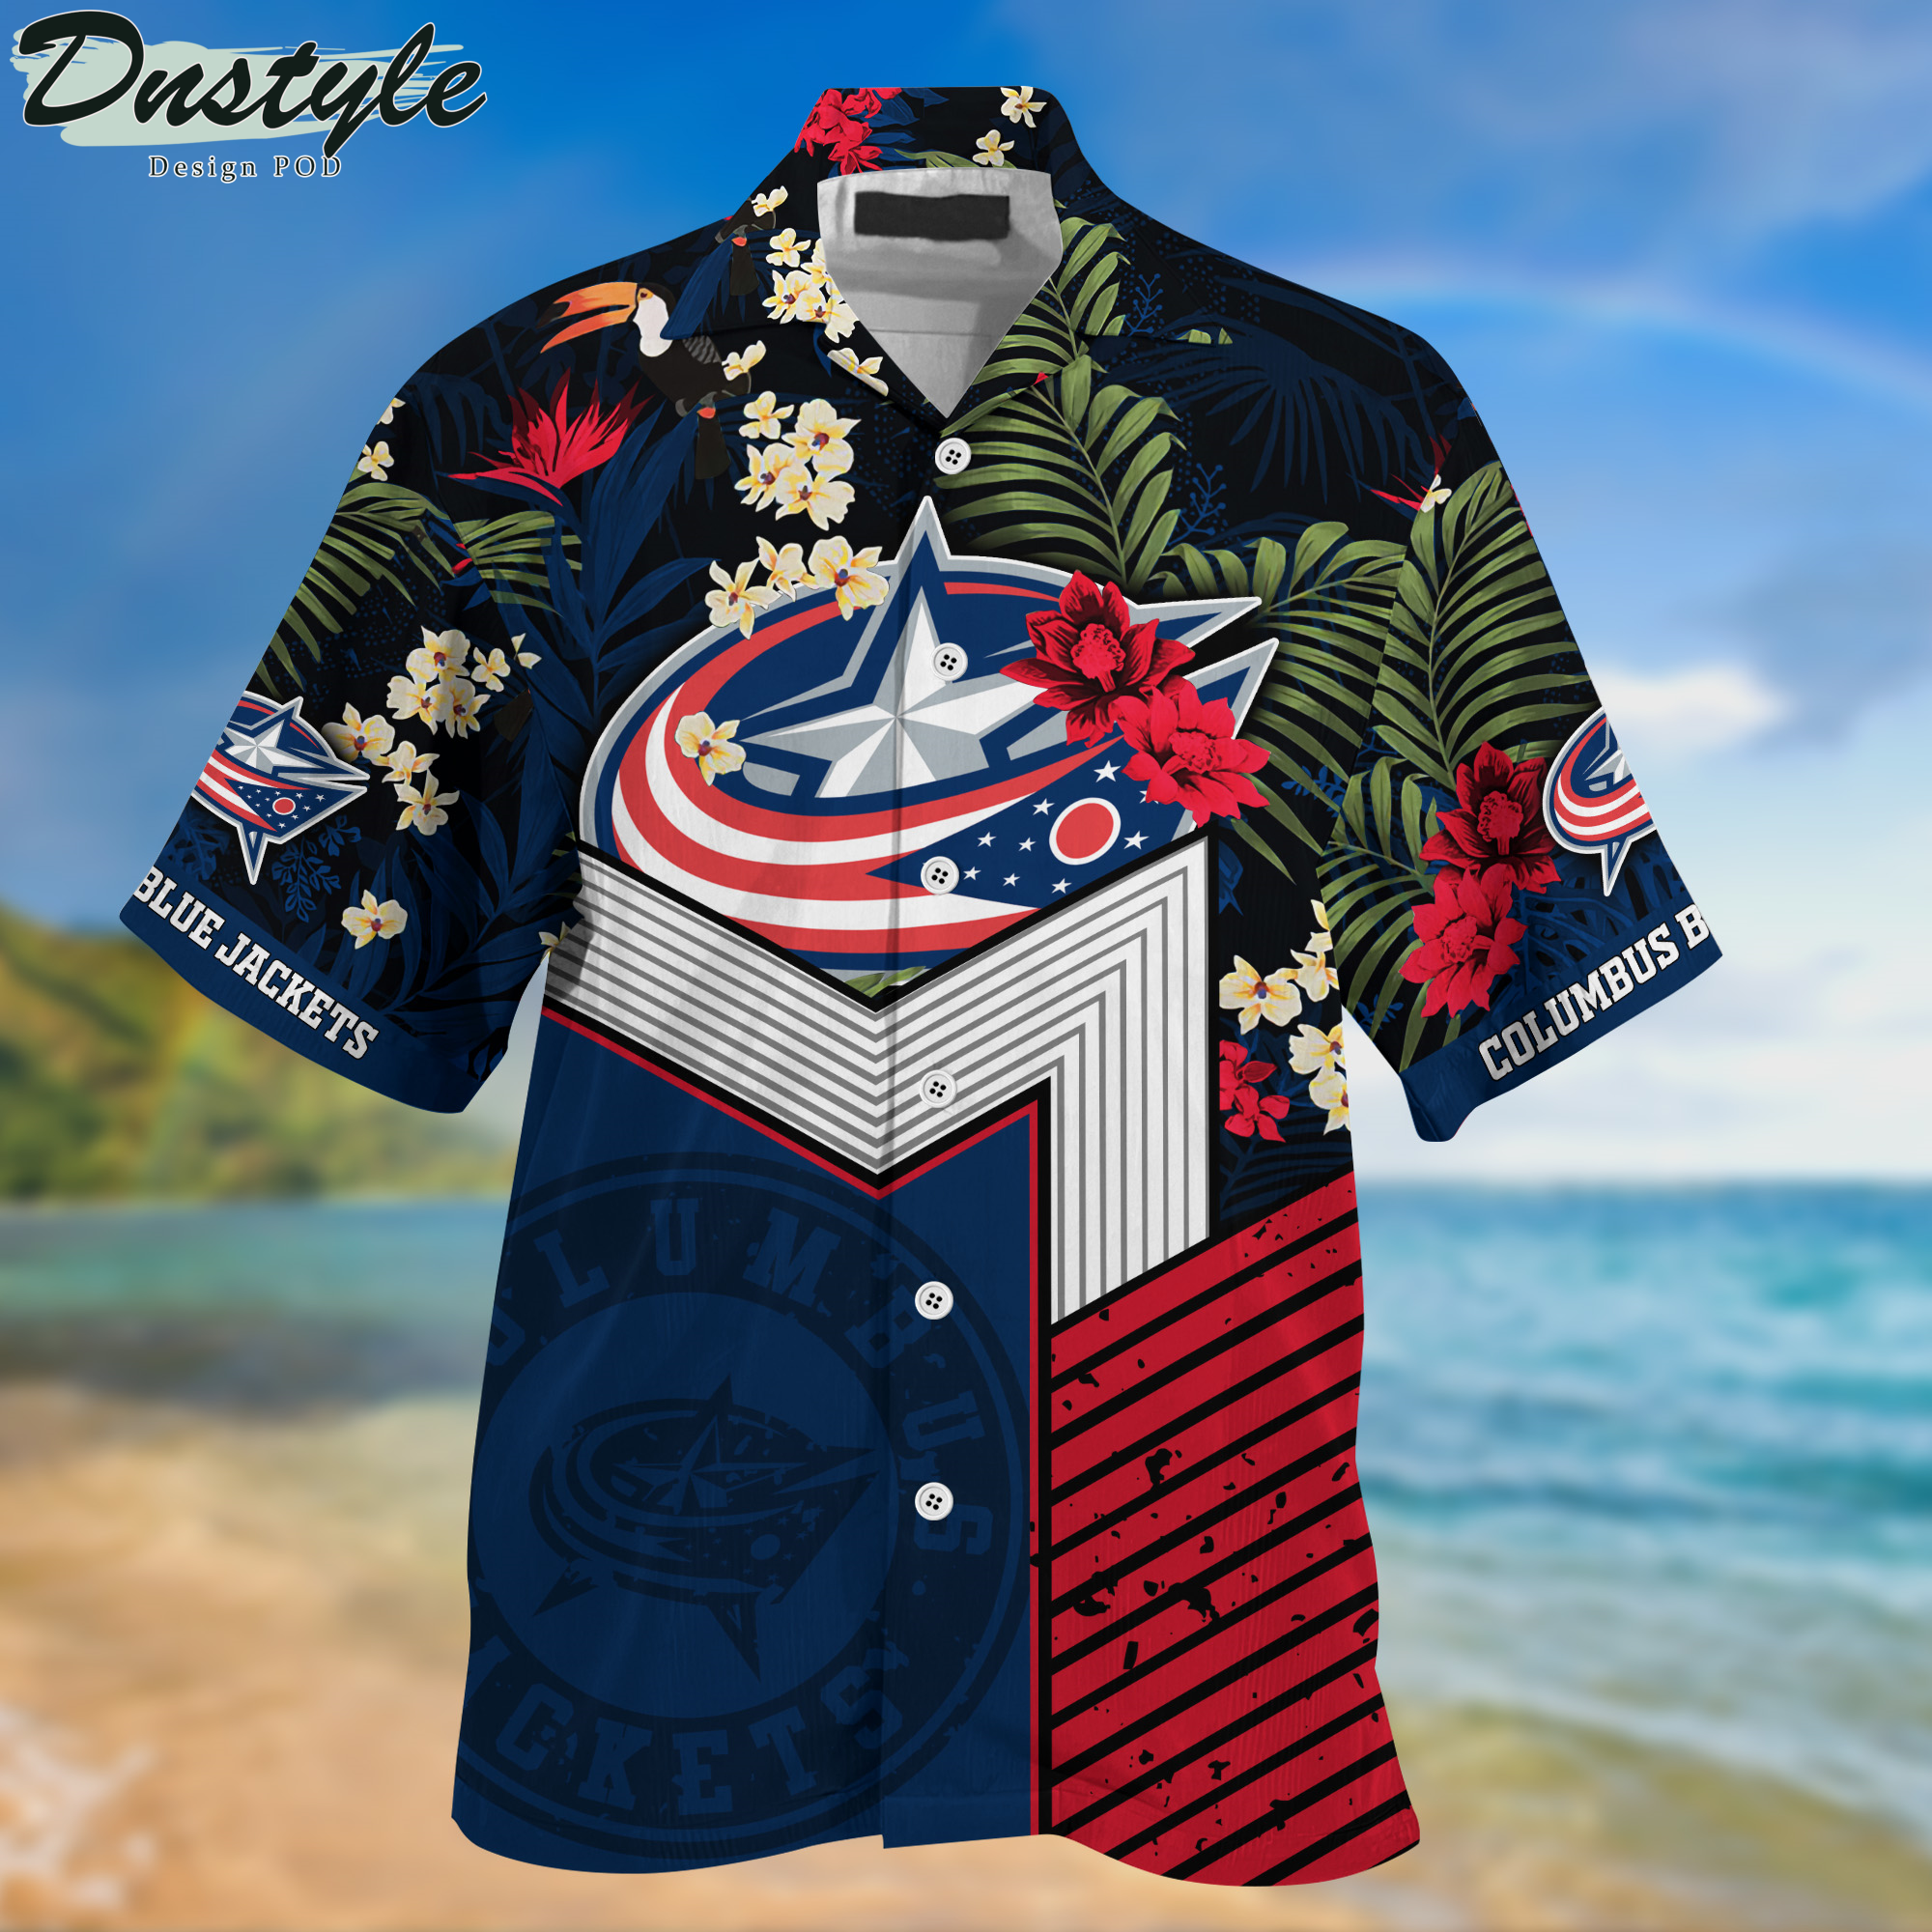 Columbus Blue Jackets Hawaii Shirt And Shorts New Collection